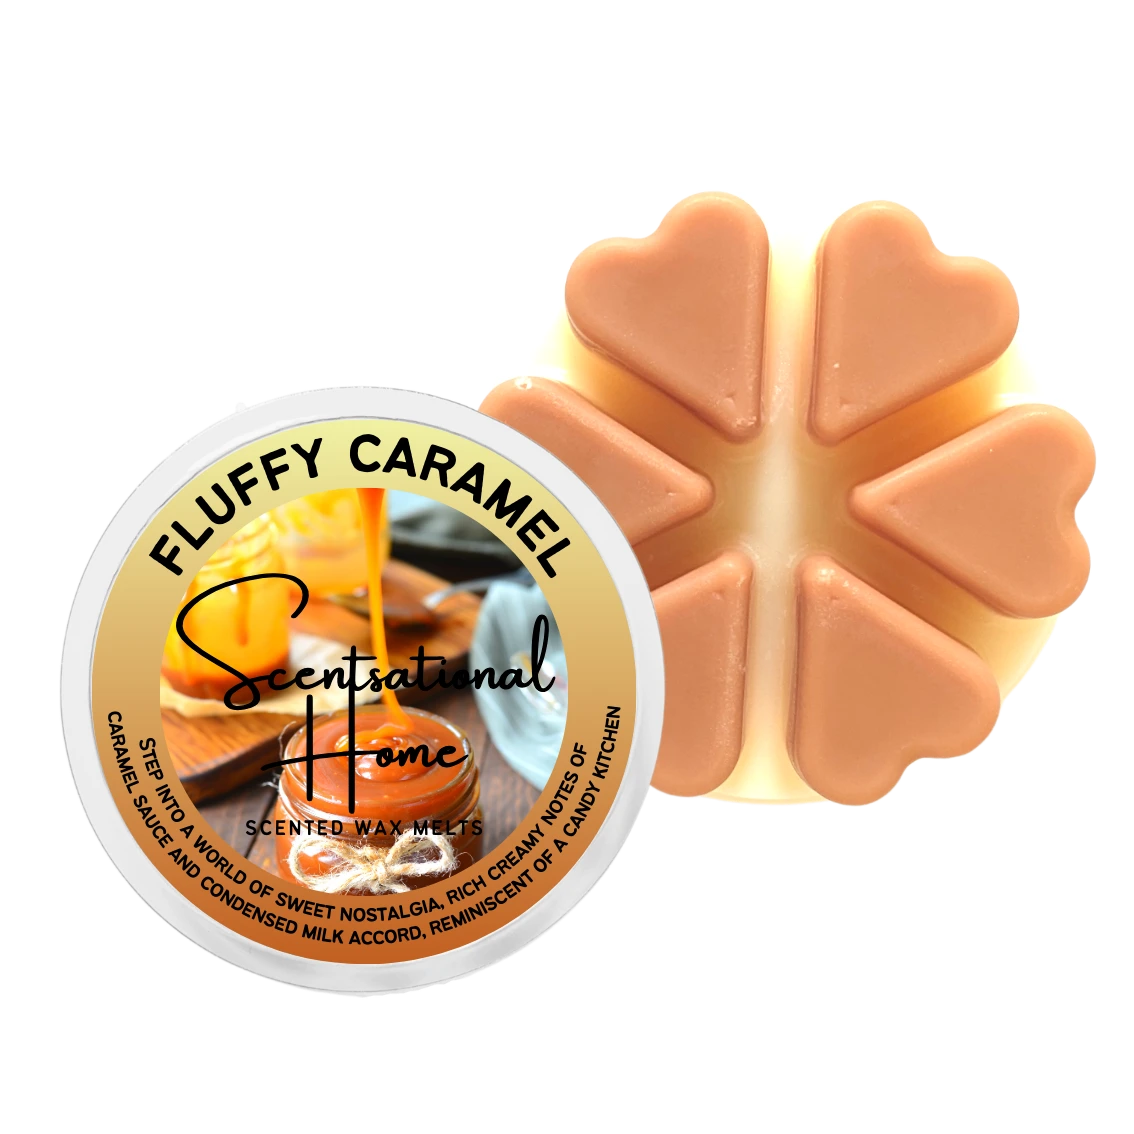 Fluffy Caramel Wax Melt